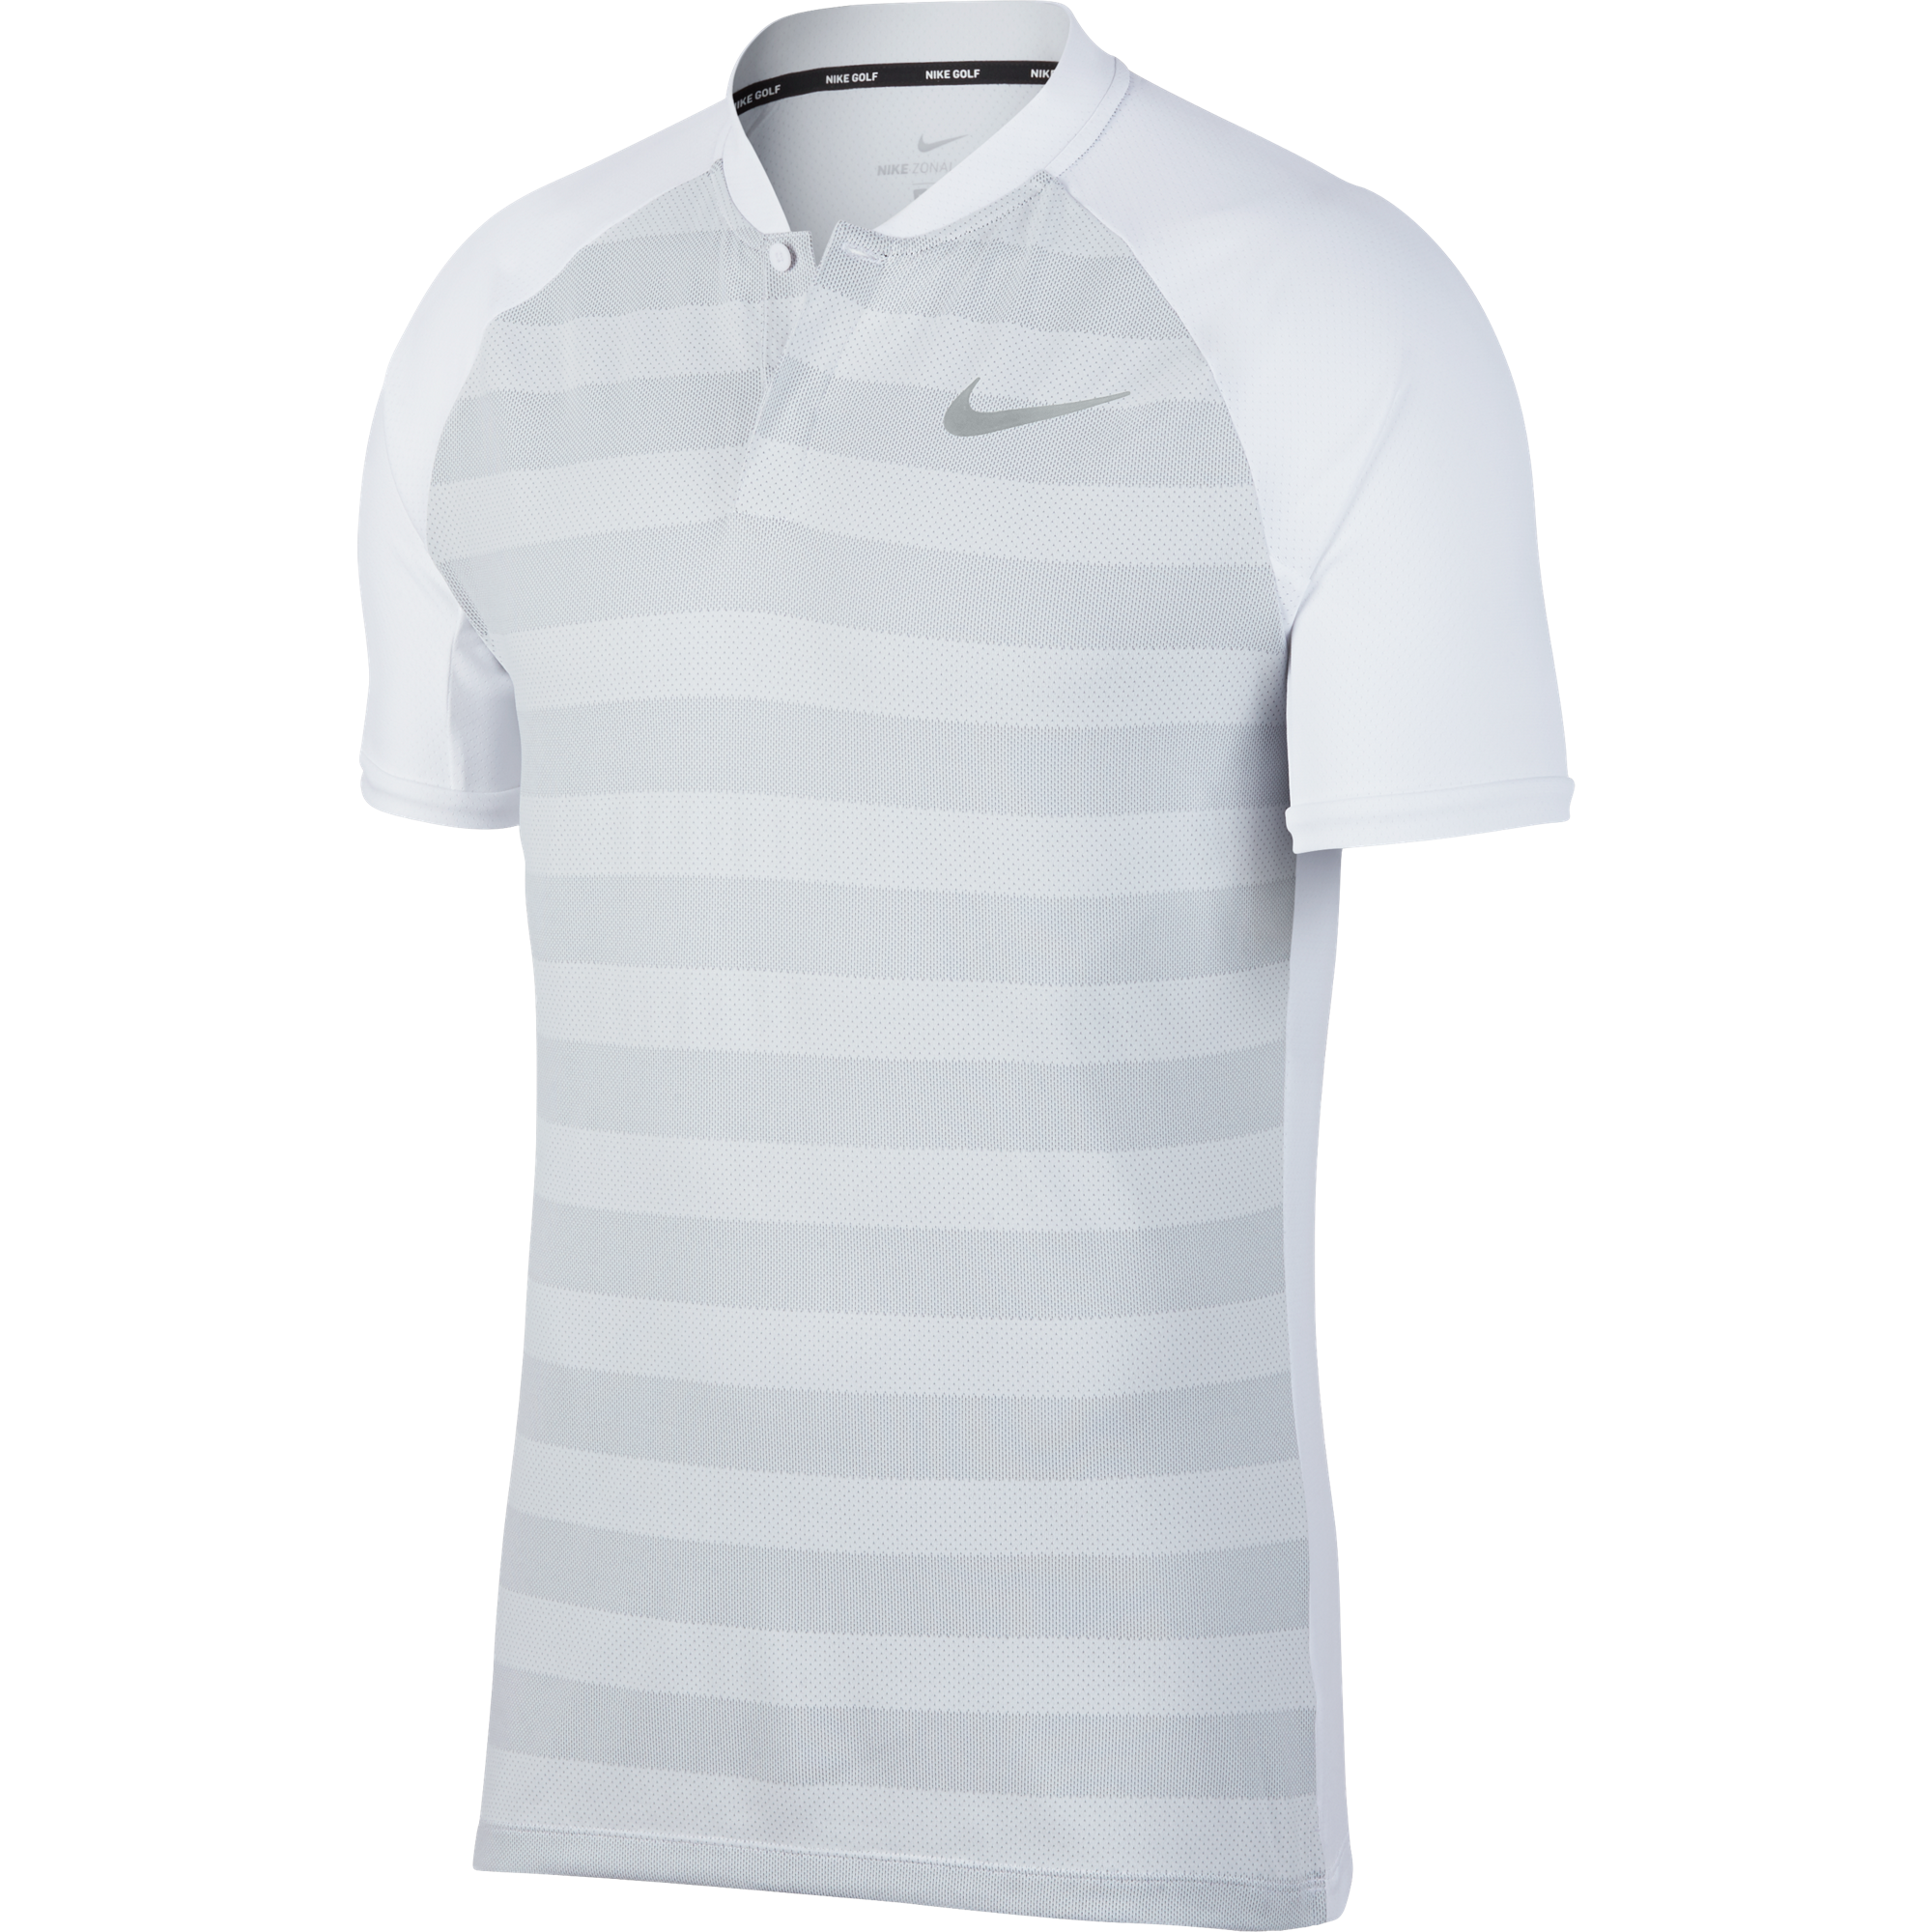 nike zonal cooling golf shirt